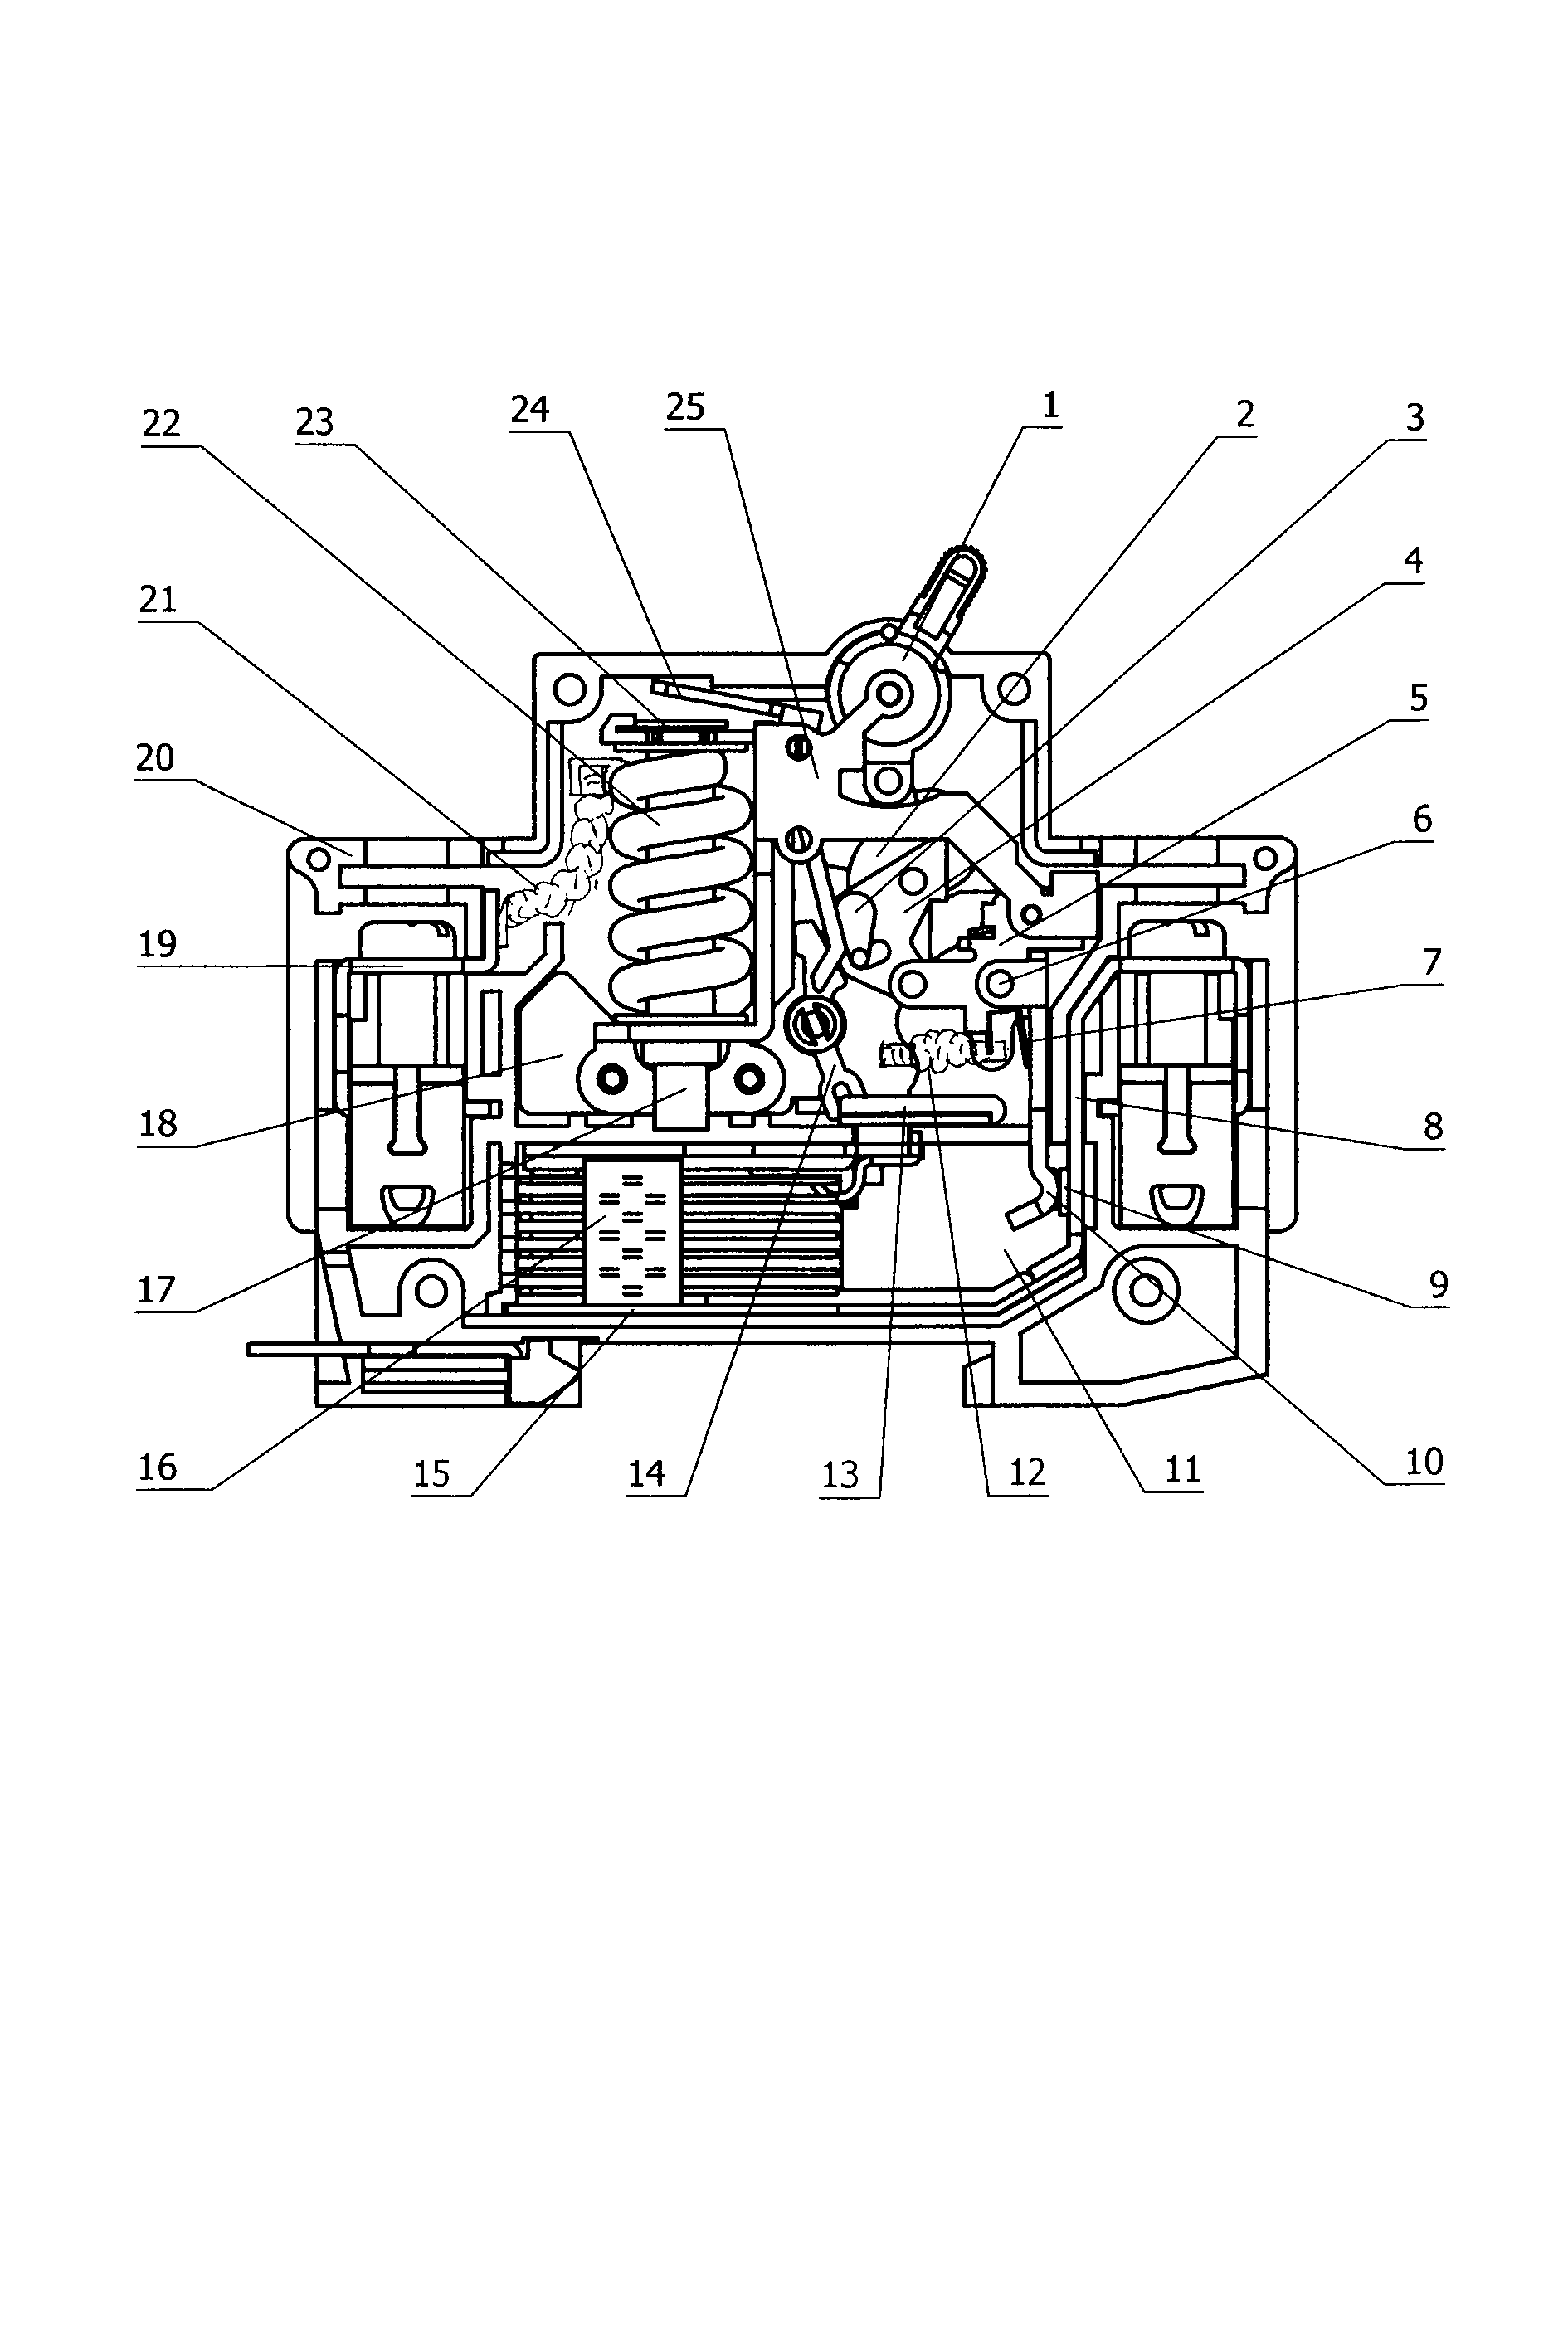 Current-limiting type liquid-magnet type miniature circuit breaker